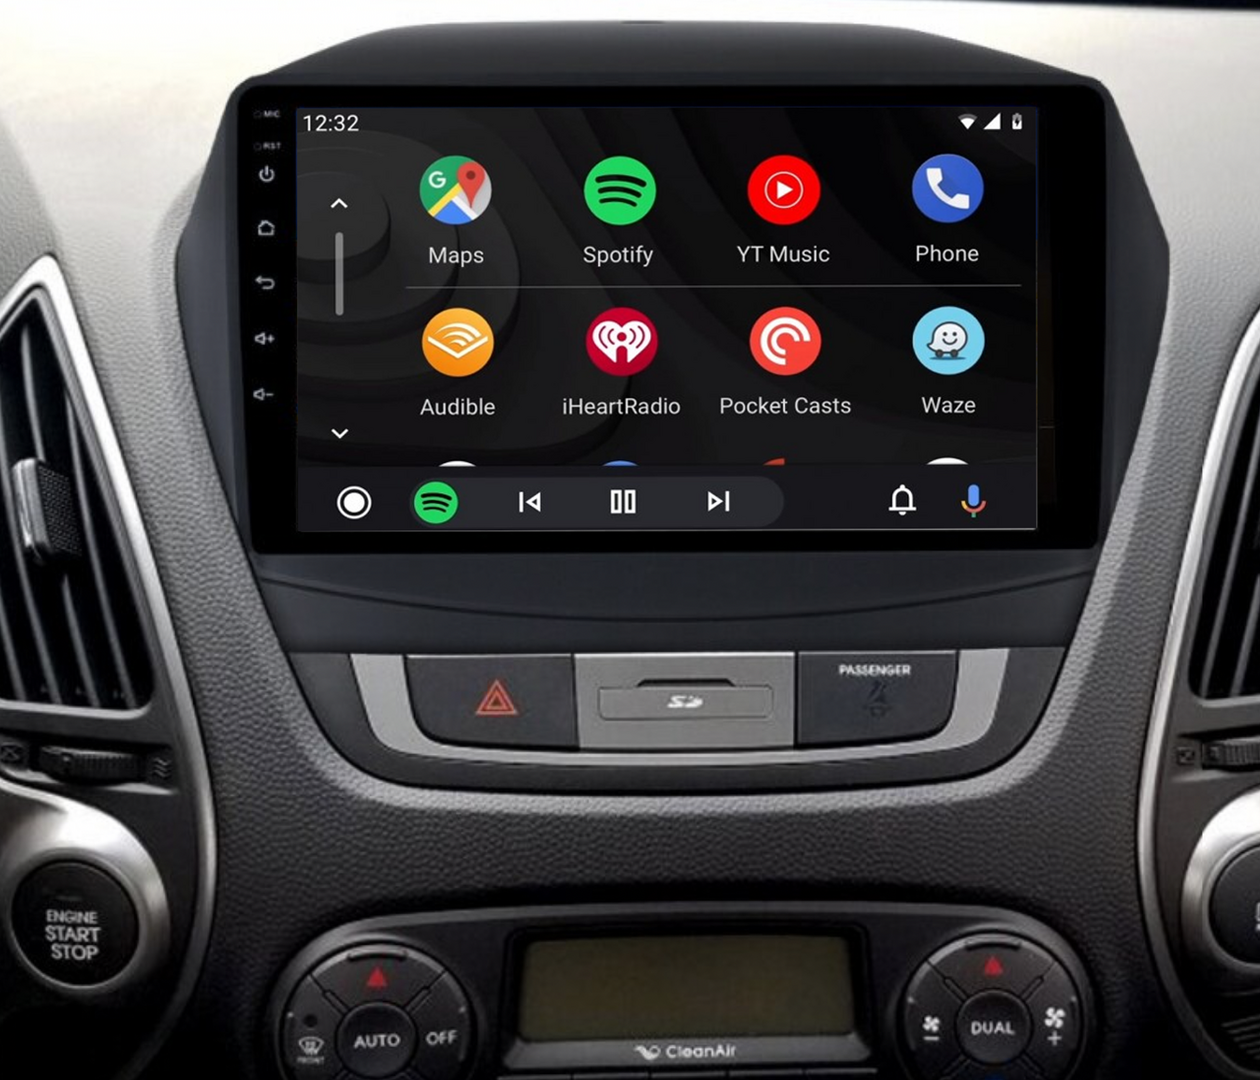 Plein écran tactile Android audio de voiture pour Hyundai IX35